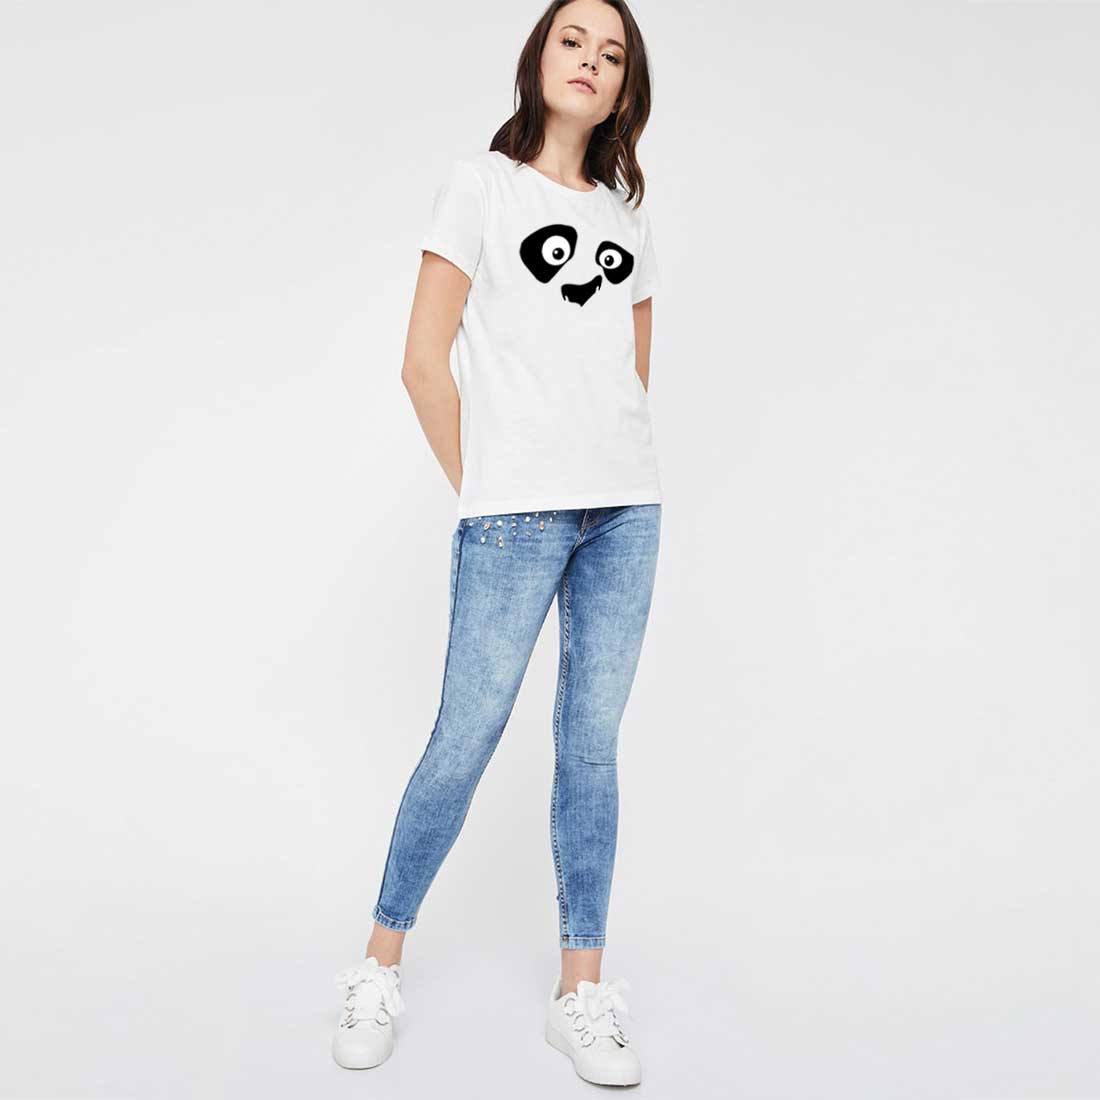 Kungfu Panda Eye White Women T-Shirt